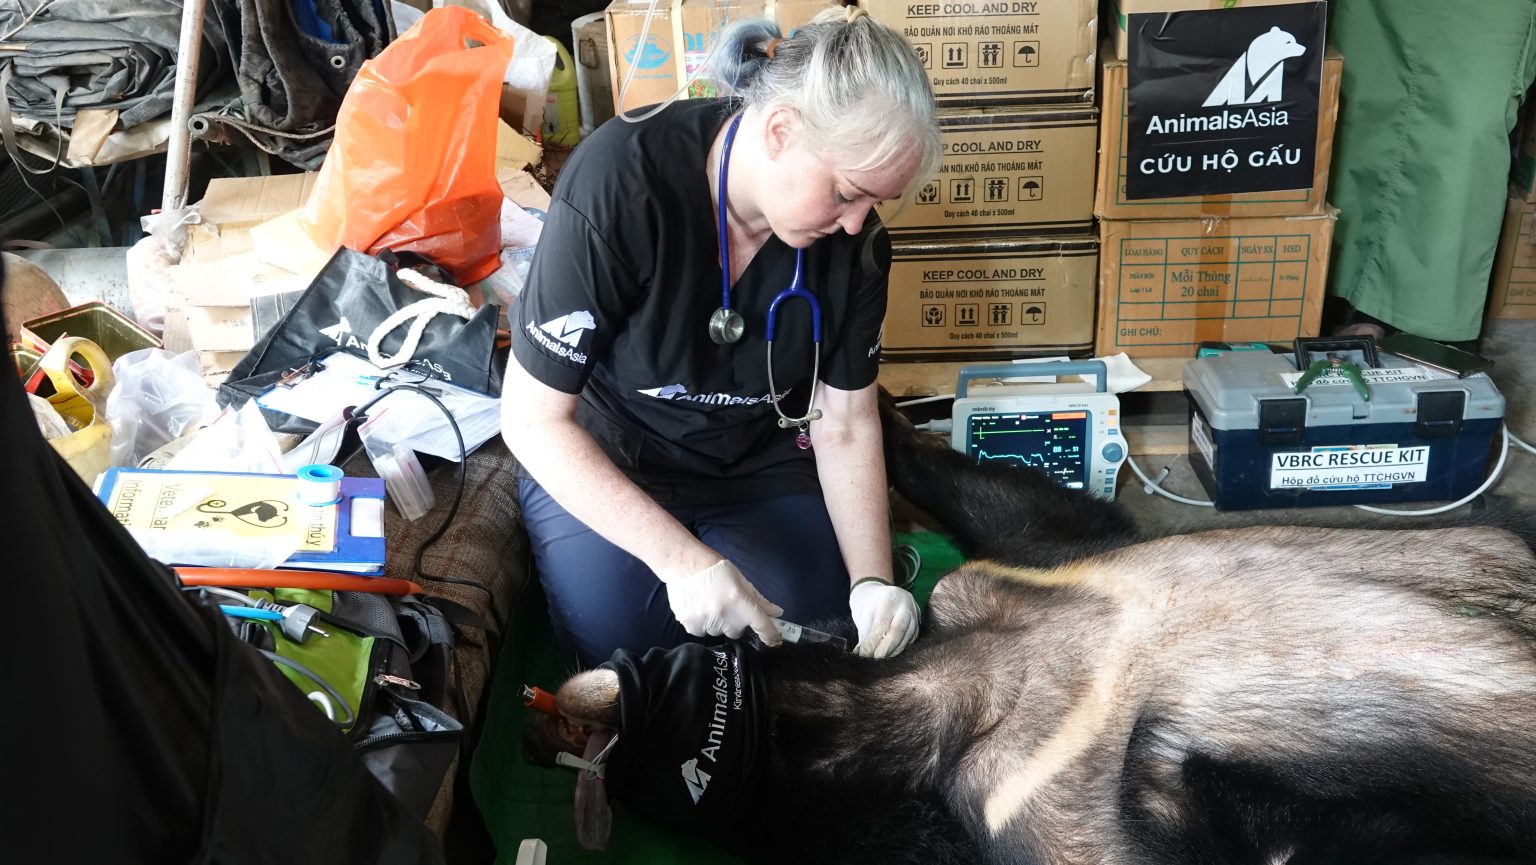 Cứu hộ thêm 2 cá thể gấu ngựa tại Bình Dương về Trung tâm cứu hộ gấu Việt Nam